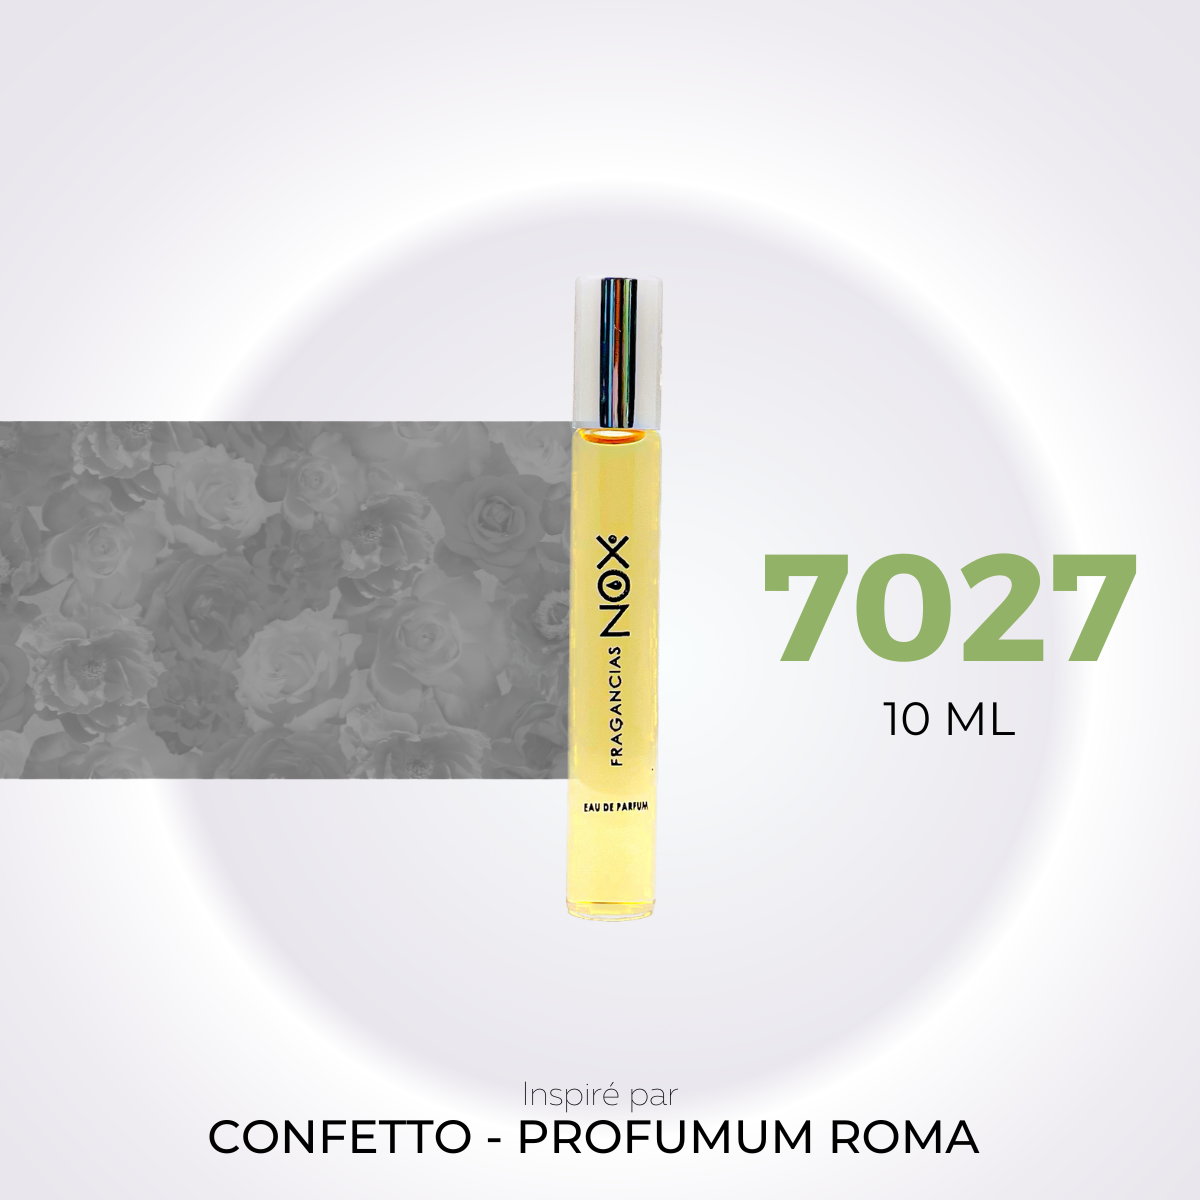 Nº 7027 - Confetto - Profumum Roma